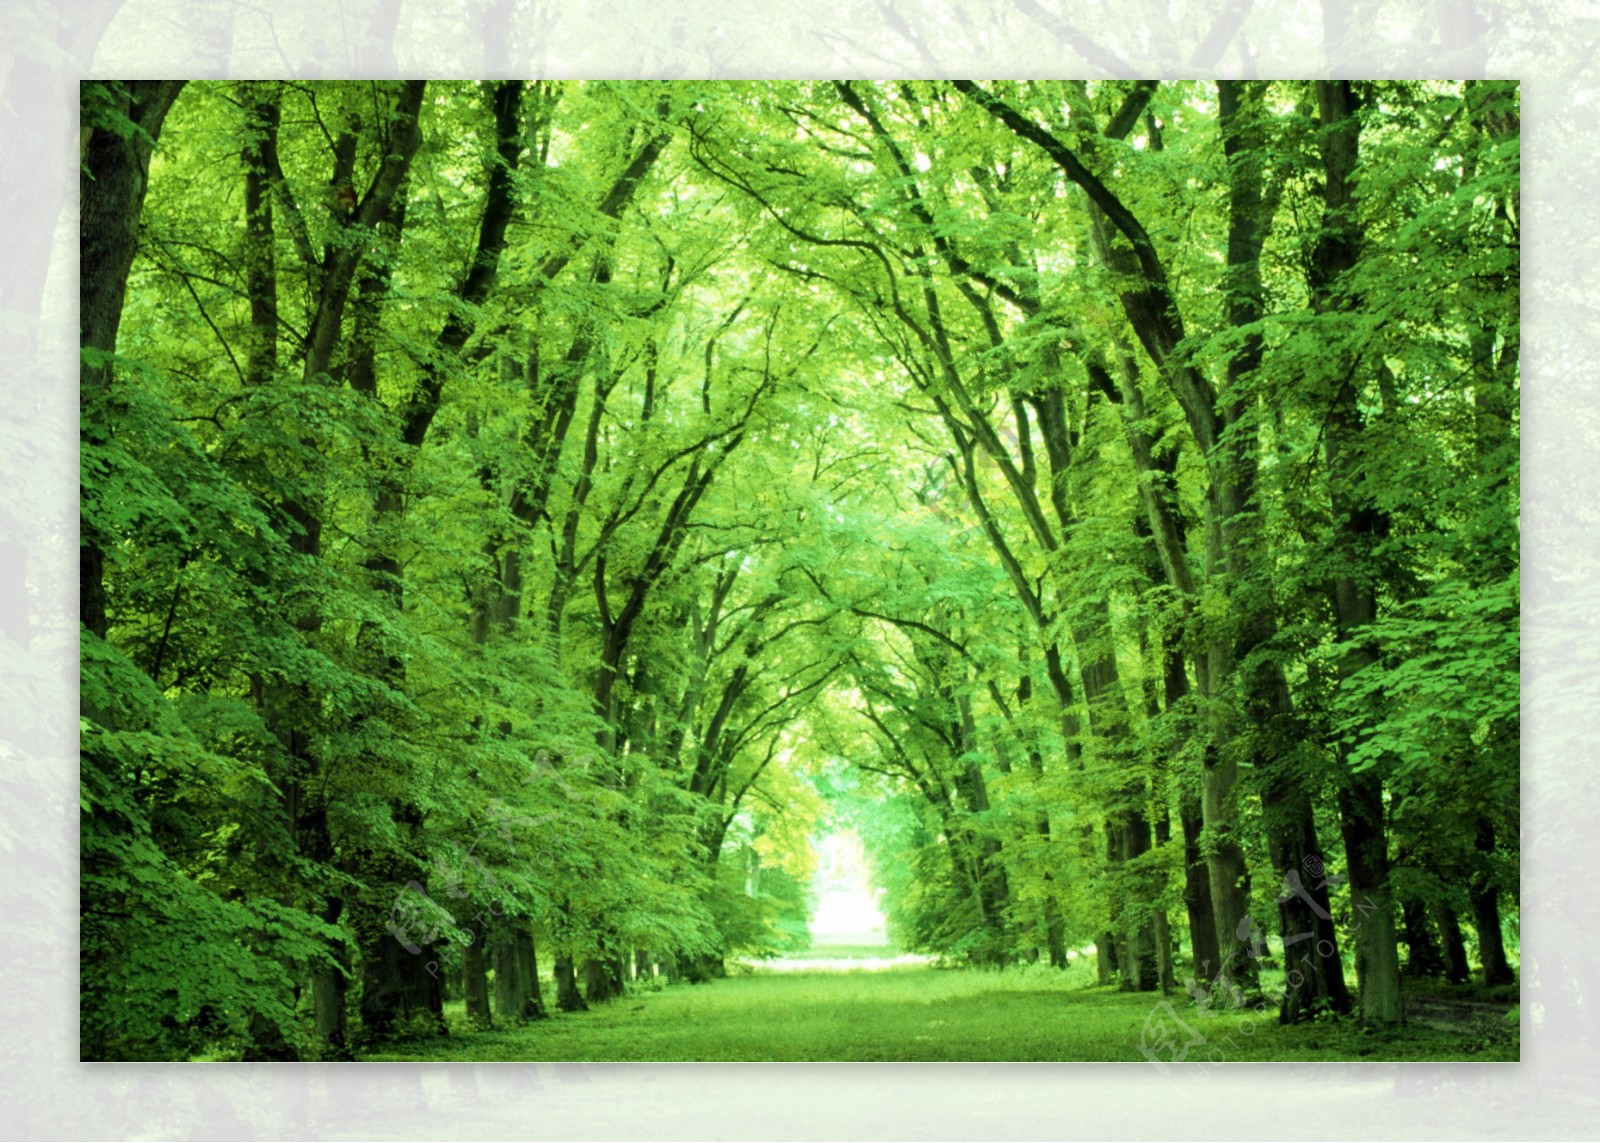 绿树林森林公园图片